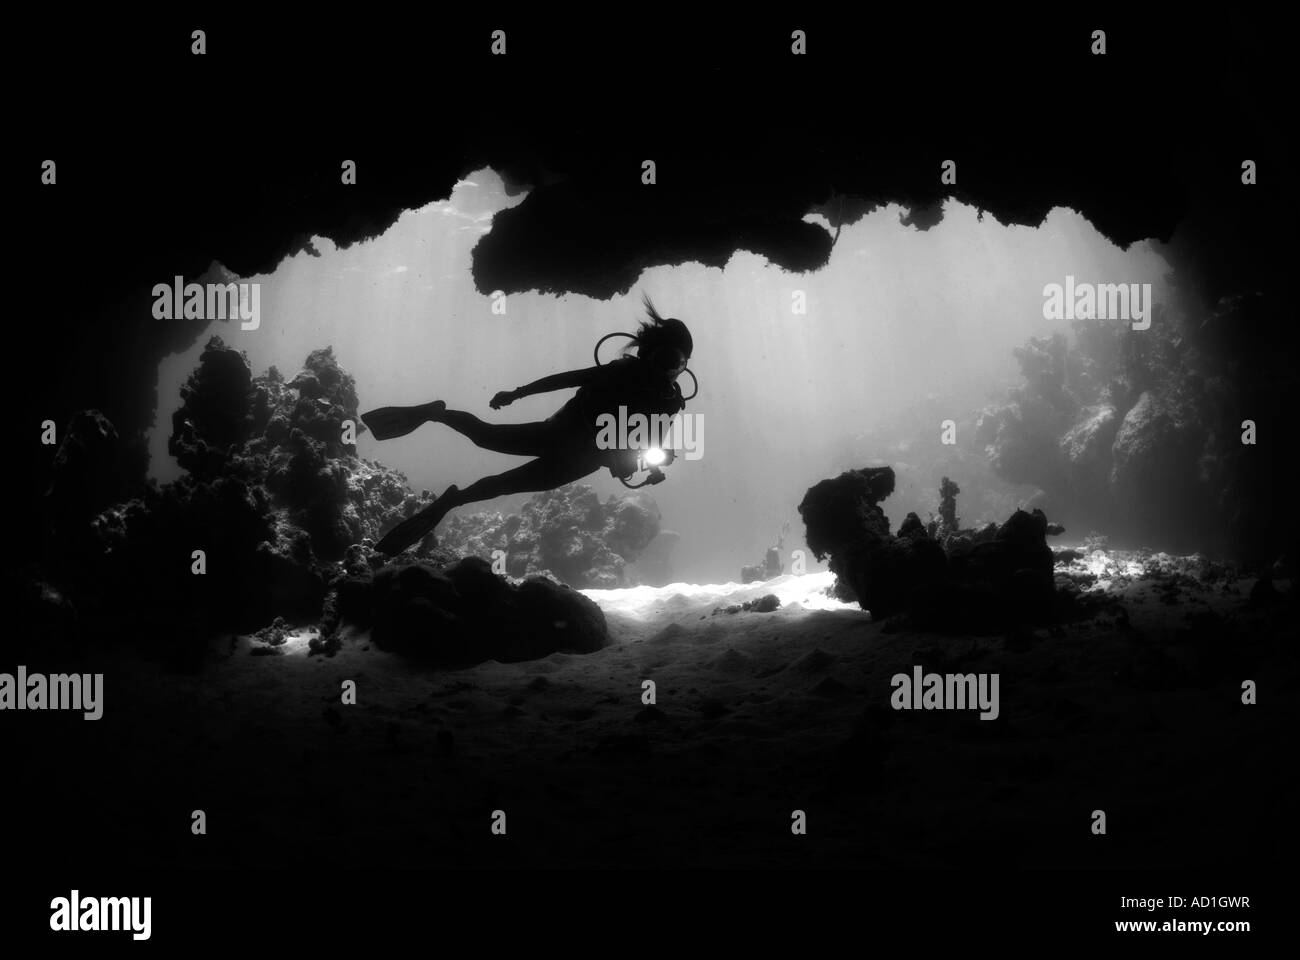 Grotte sous-marine dans les îles Vierges britanniques d'Anegada BVI, femme diver, silhouette, plongée, plongée sous-marine, océan, mer, noir et blanc, Banque D'Images